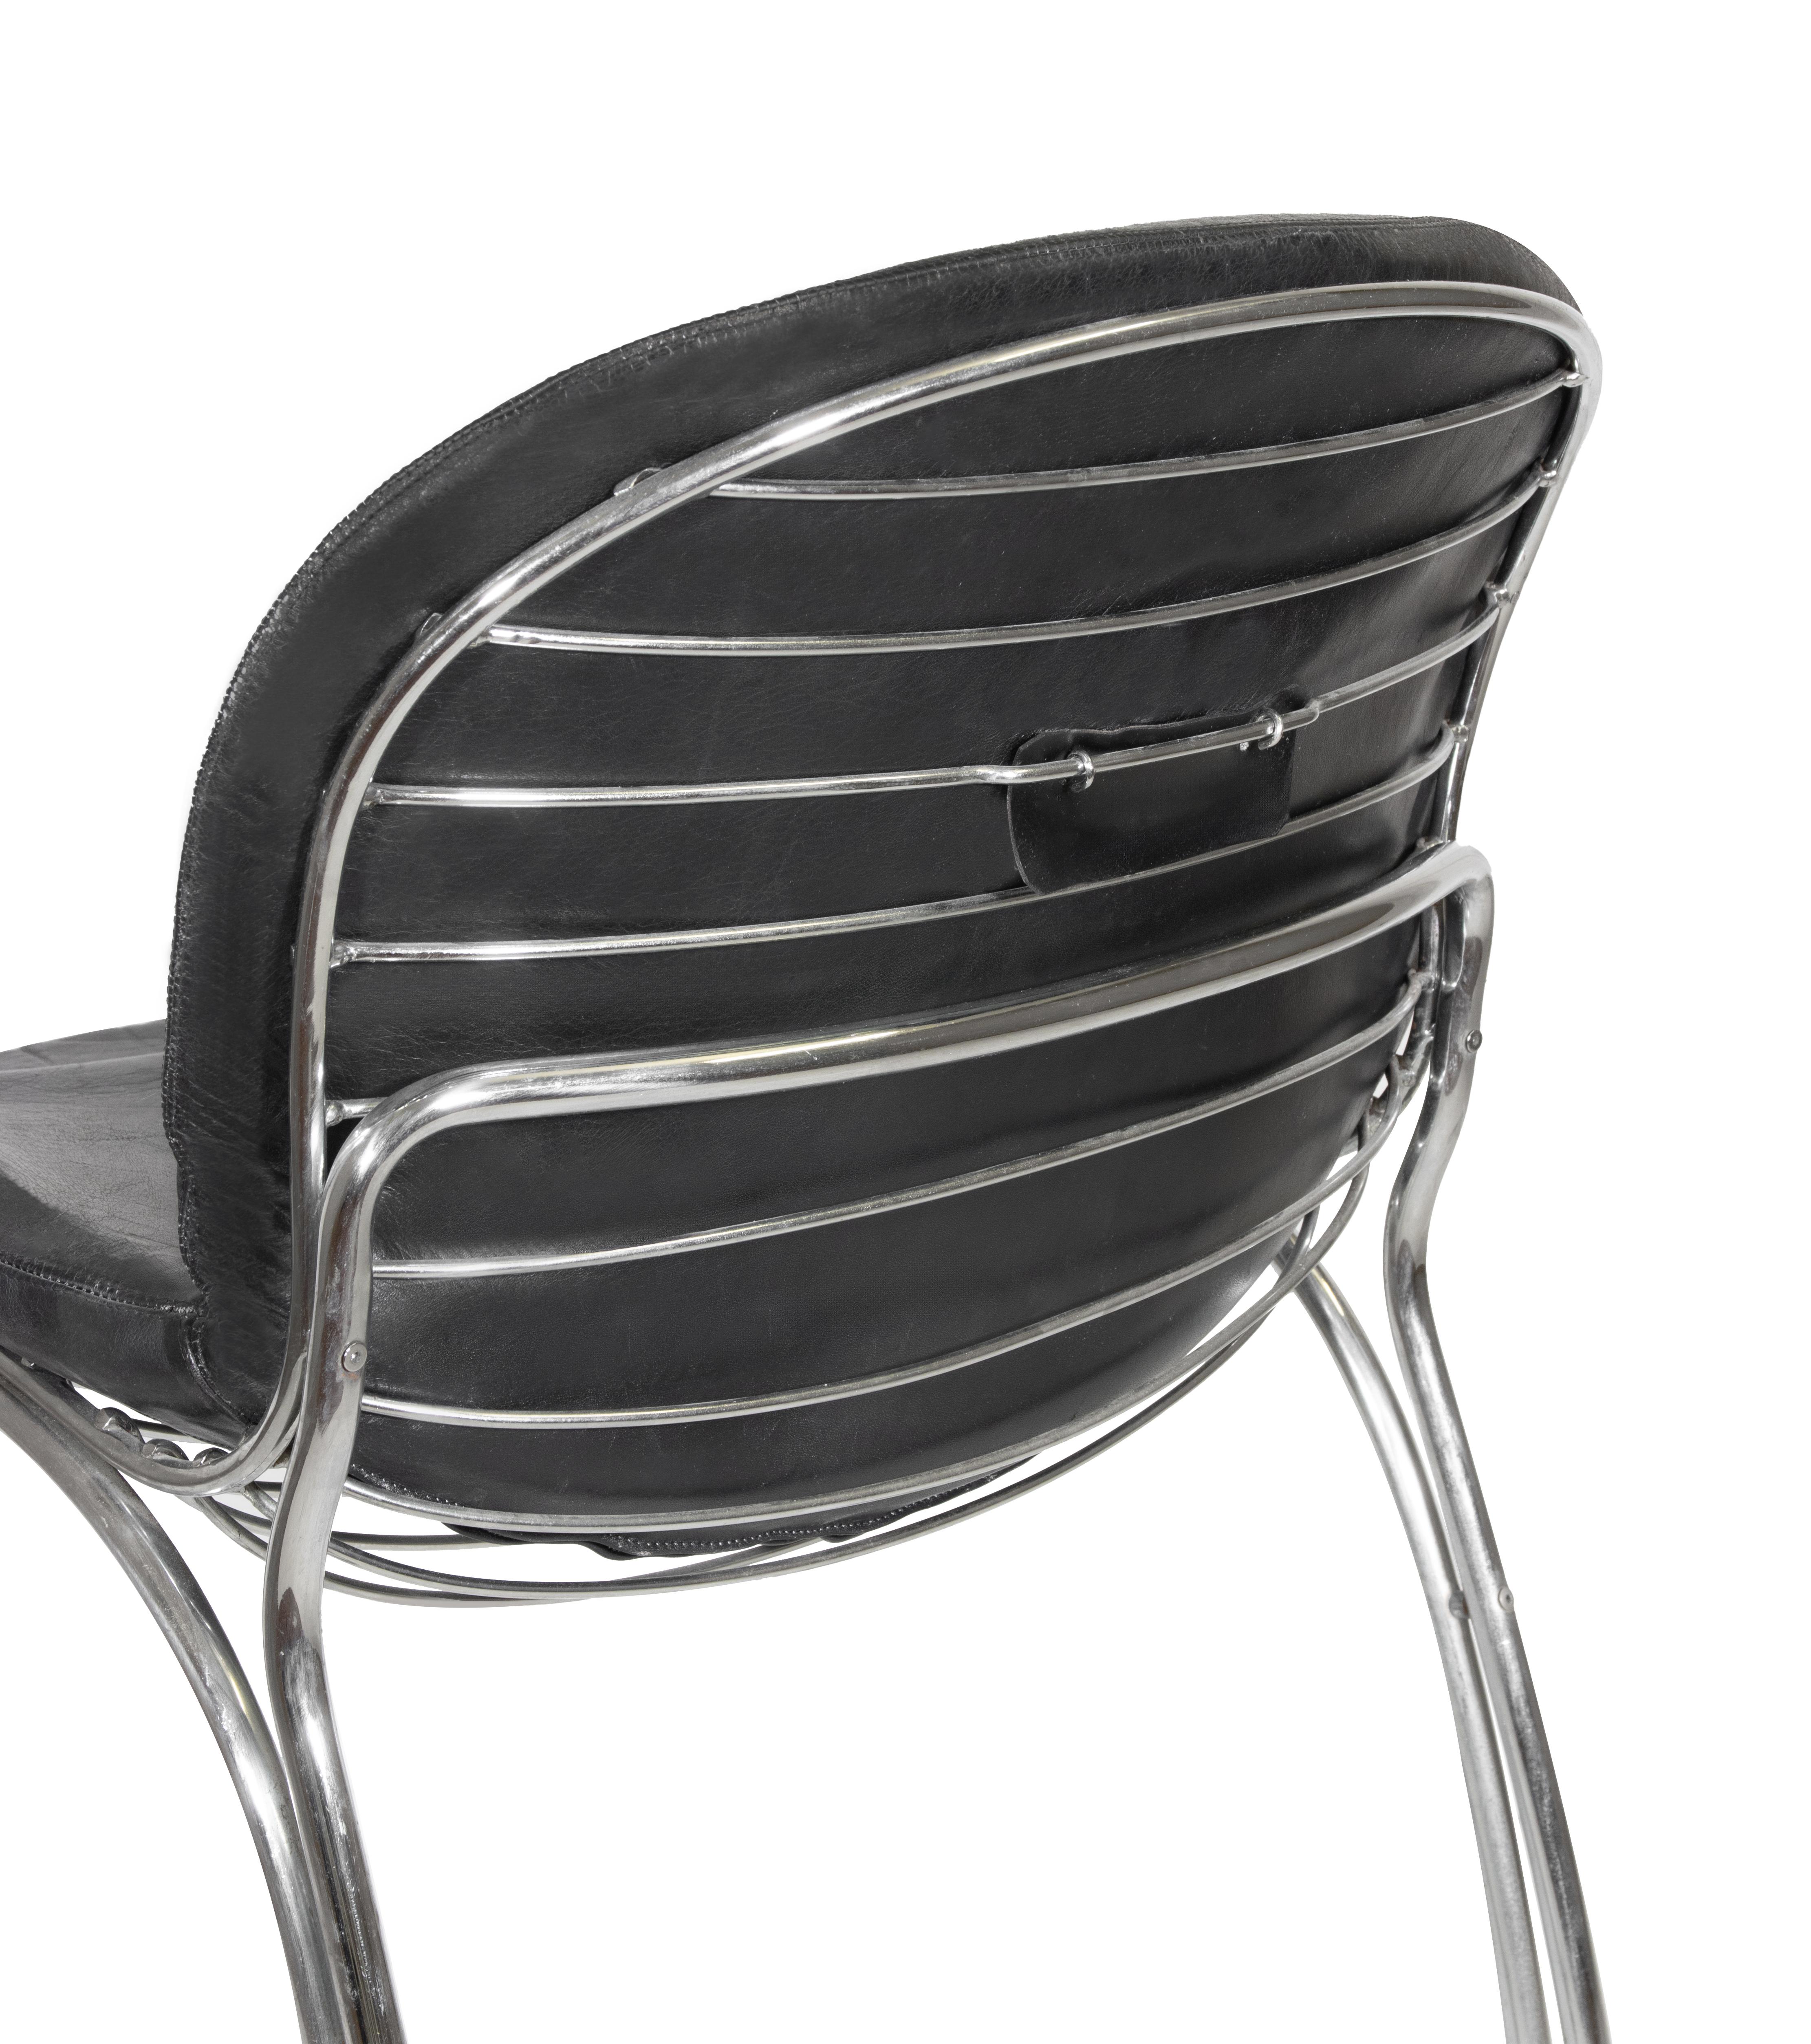 Quatre chaises avec structure en métal chromé et assise en cuir modèle 'Sabrina', dessinées par Gastone Rinaldi.

Prod. RIMA, Italie, 1970 ca.

80.5x50x64cm

Bon état, à l'exception de deux chaises présentant des signes d'usure du temps.